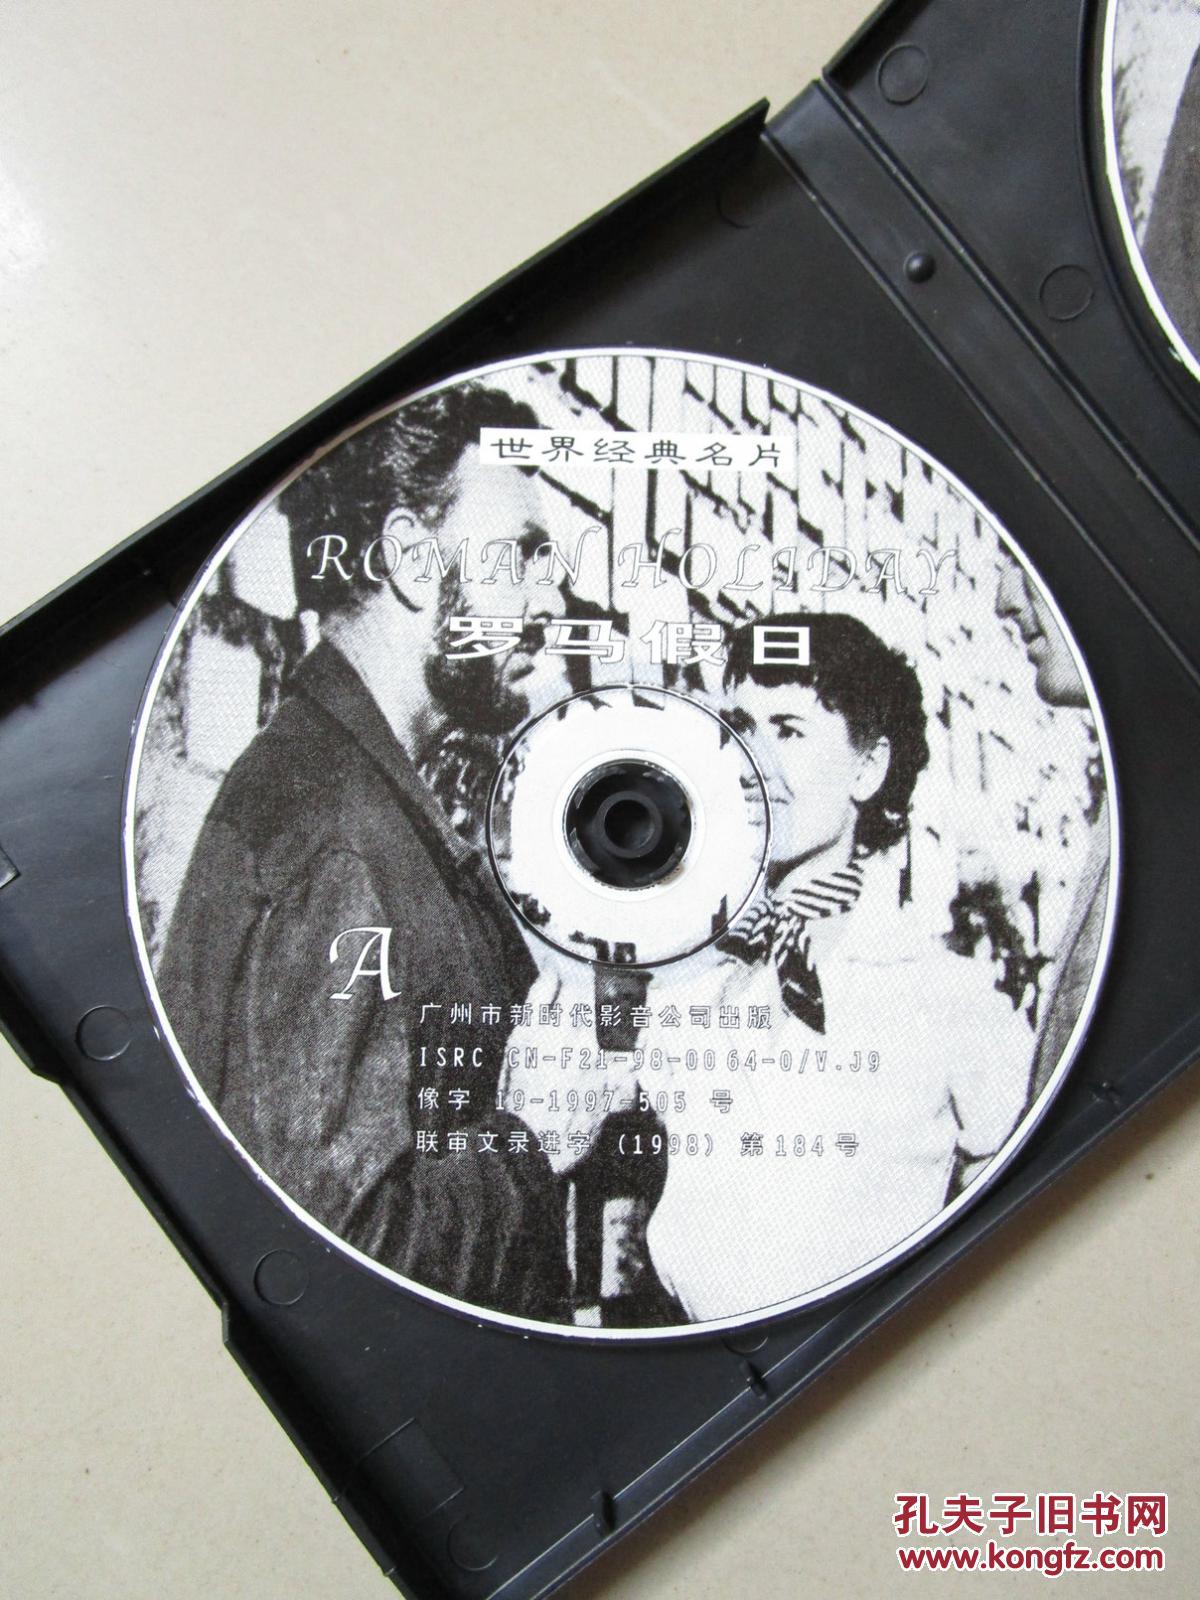 【图】怀旧电影VCD:奥斯卡历届获奖巨片 罗马